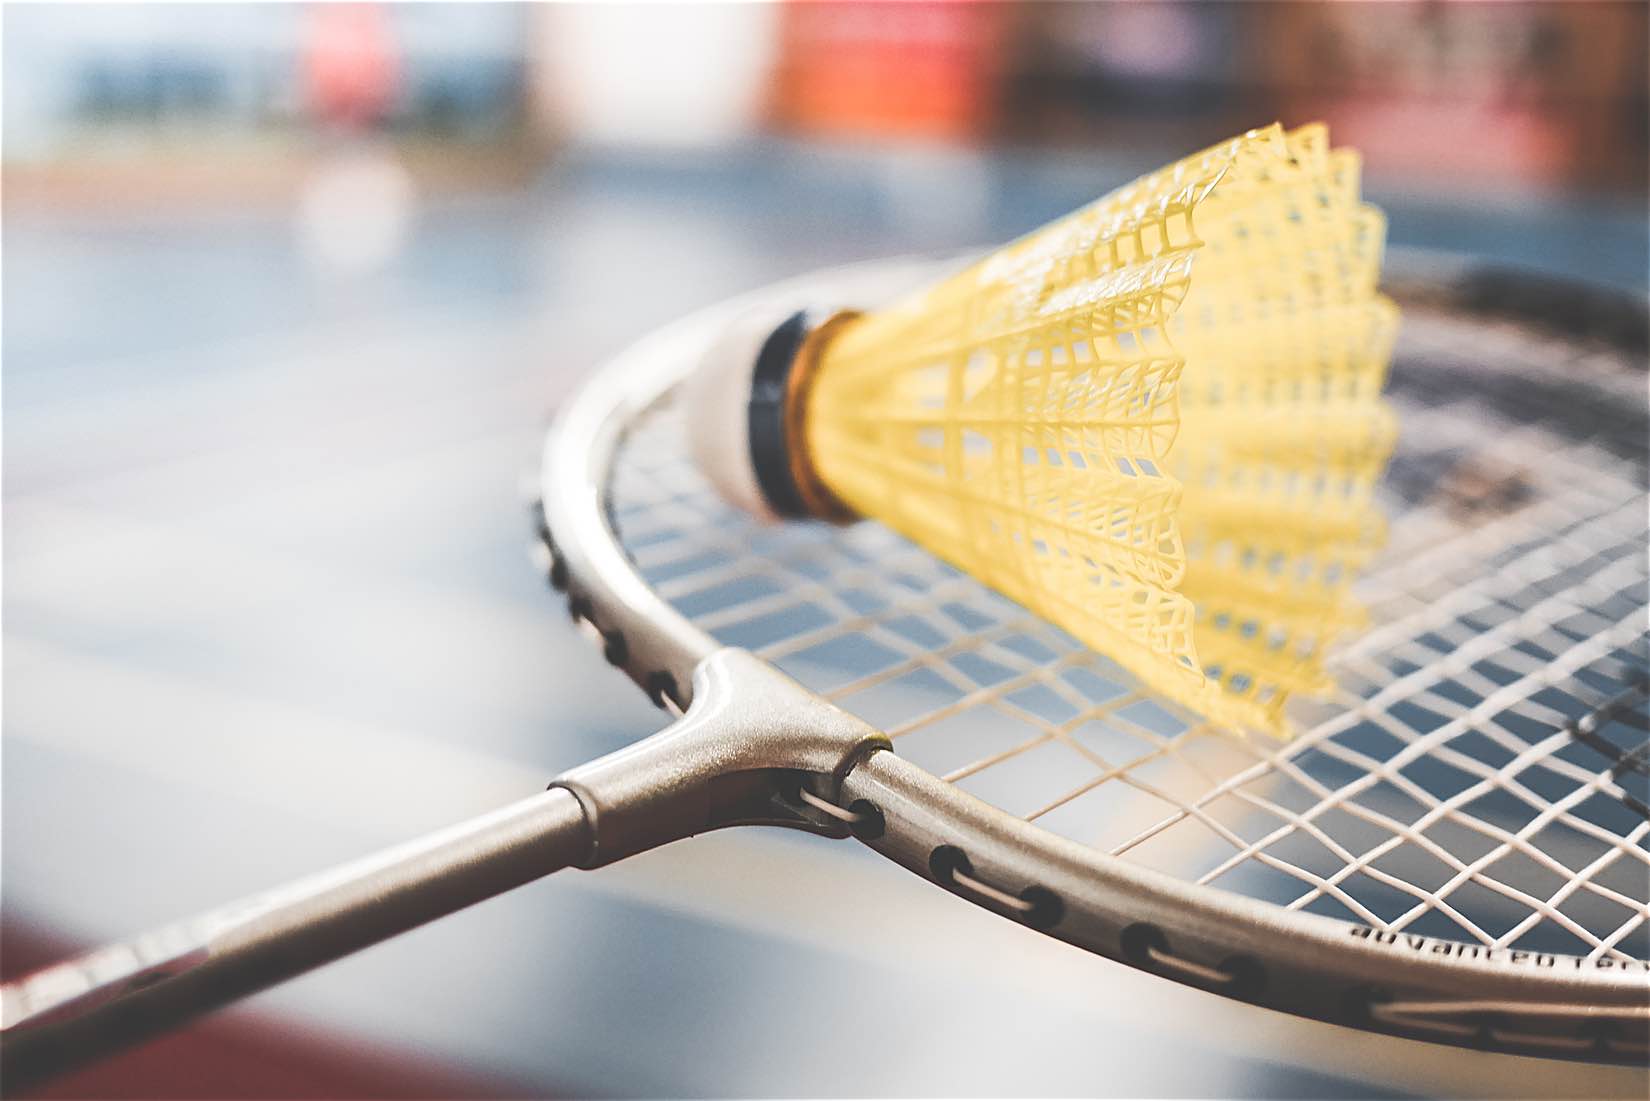 10 Top rated Badminton rackets on Amazon Playo